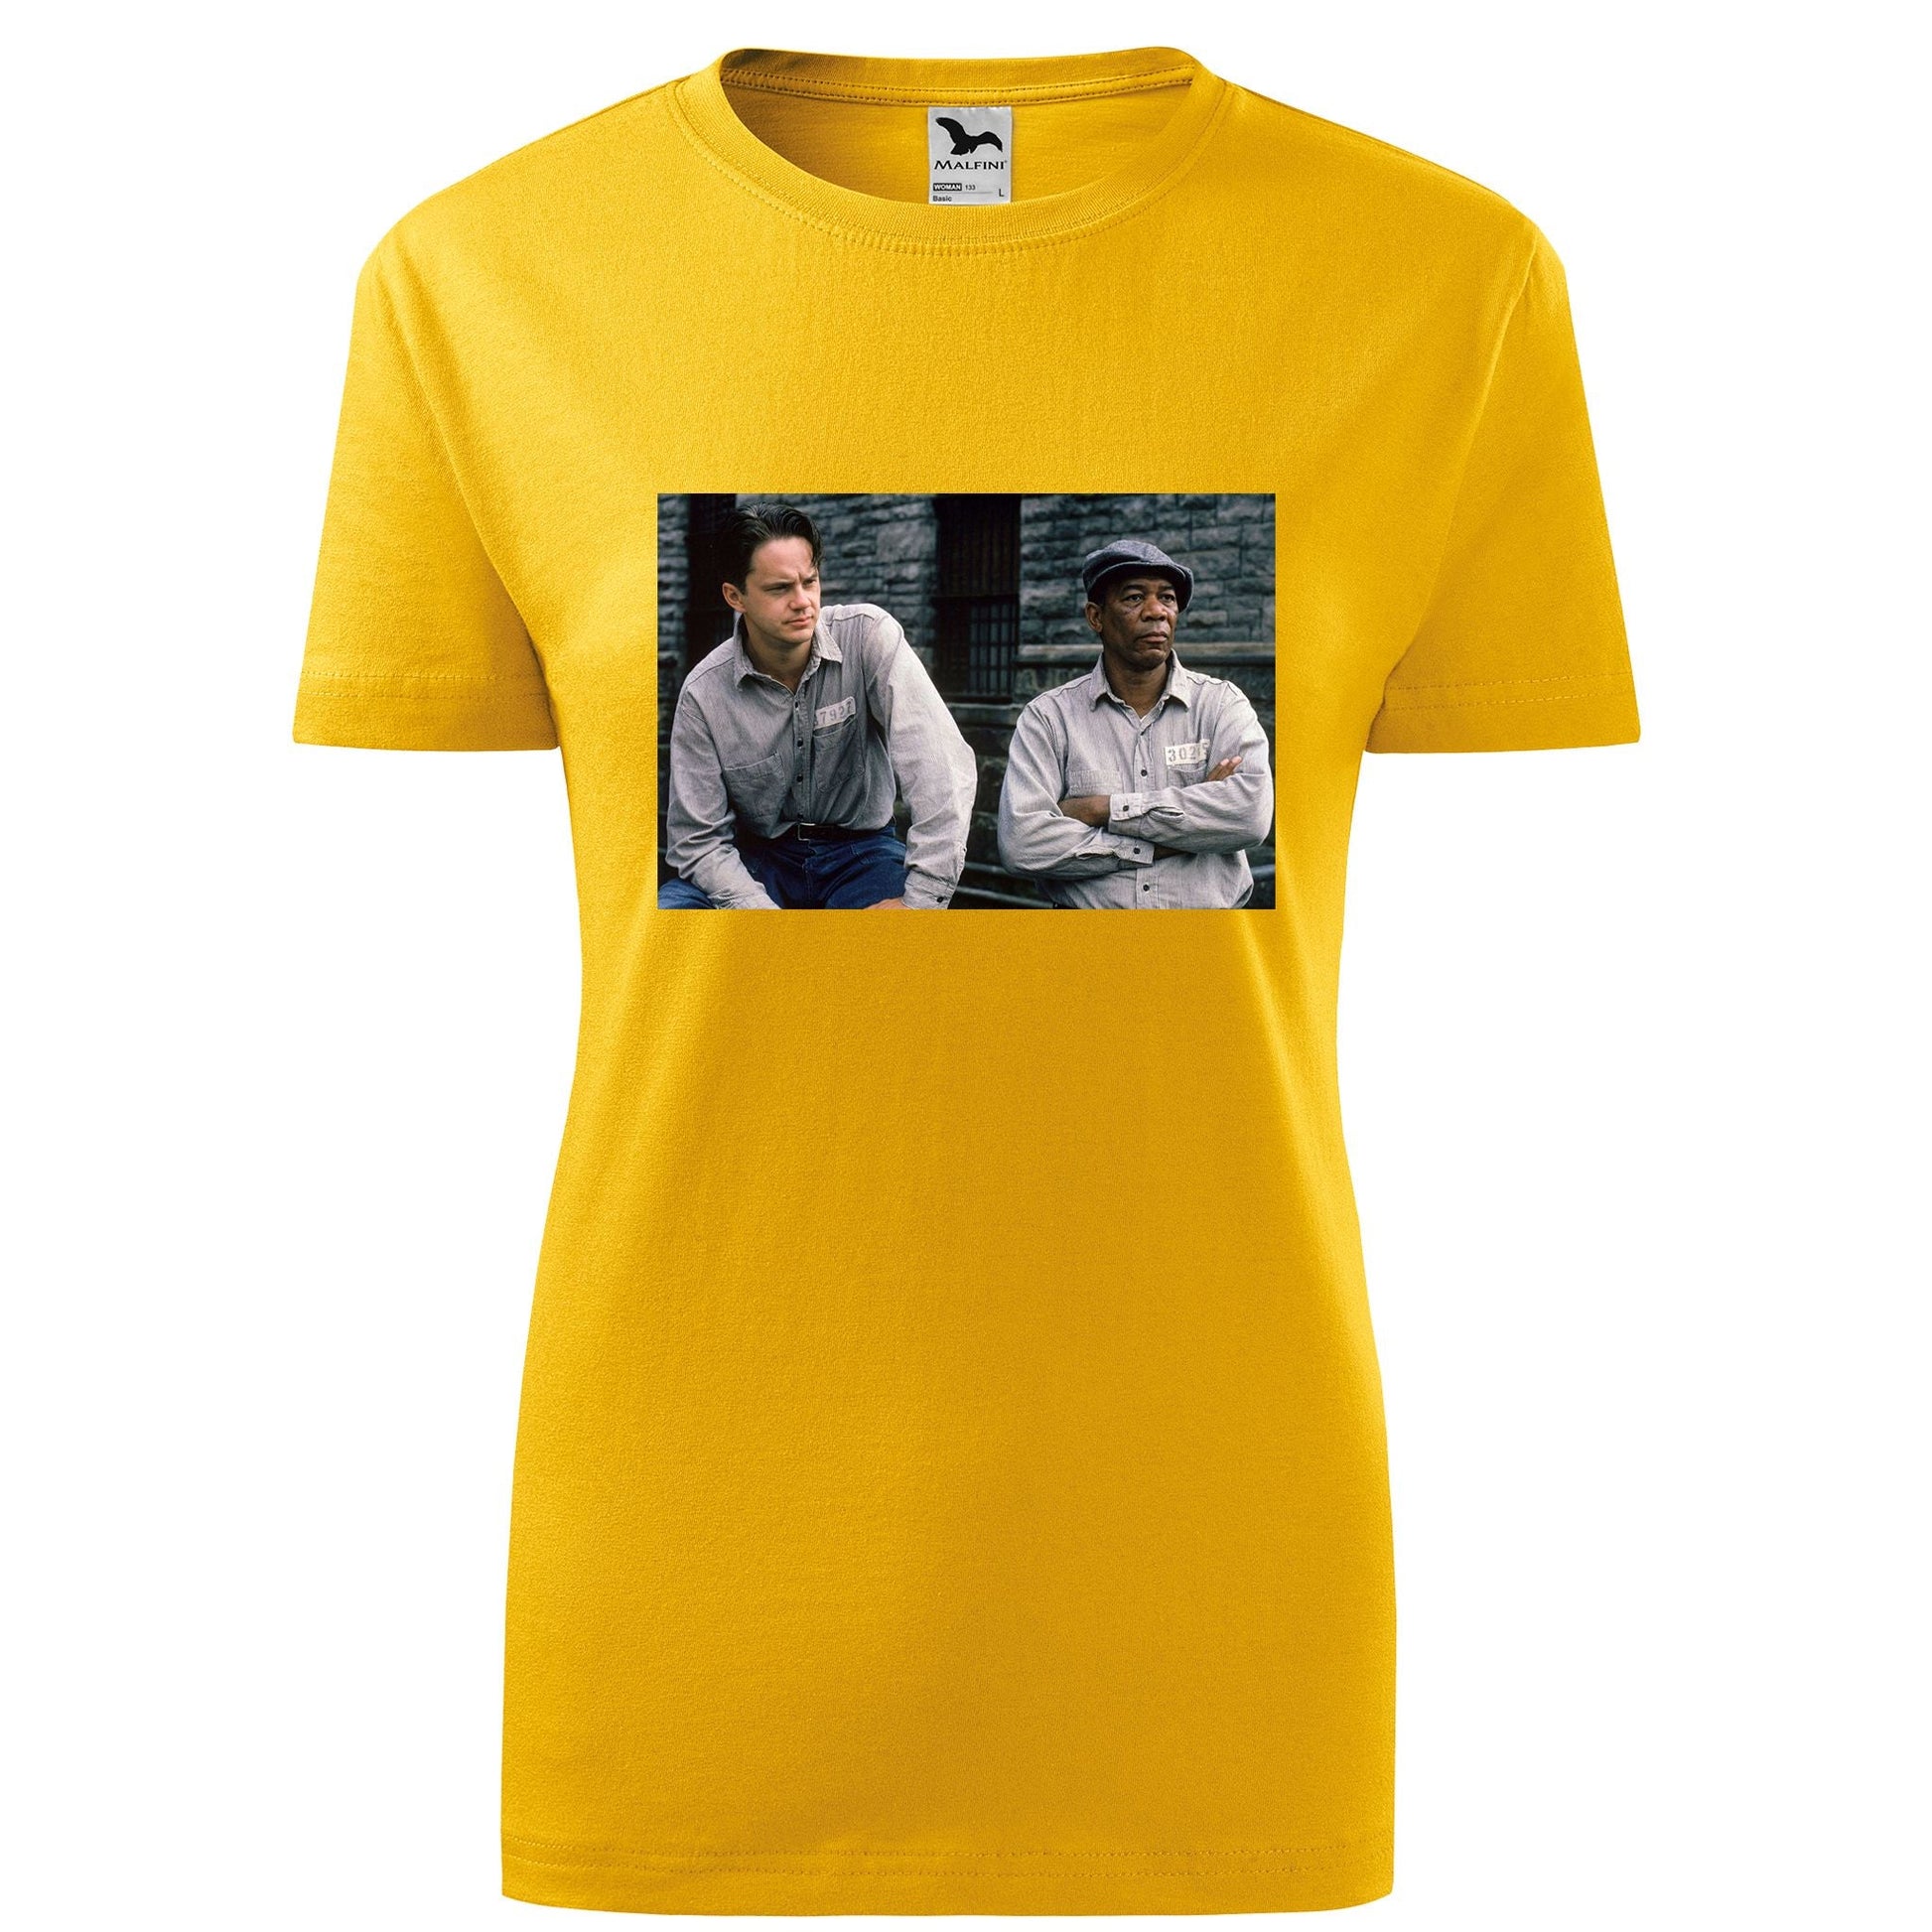 Shawshank redemption t-shirt - rvdesignprint